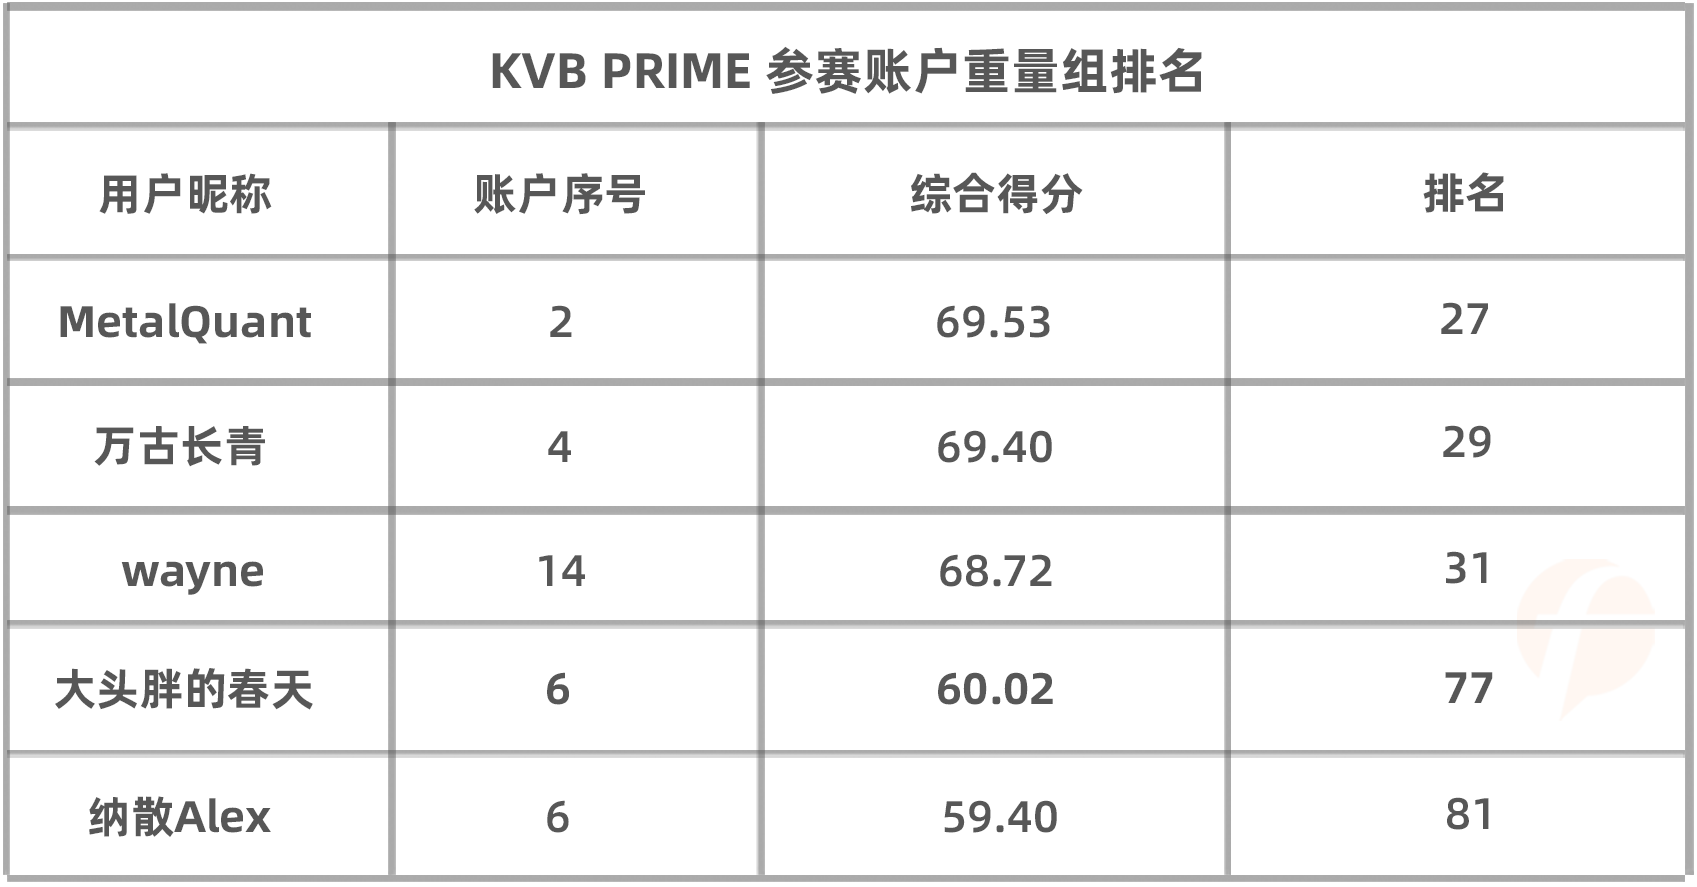 大赛进入冲刺月，KVB PRIME 组实力选手@猎人交易 暂居轻量组第一！